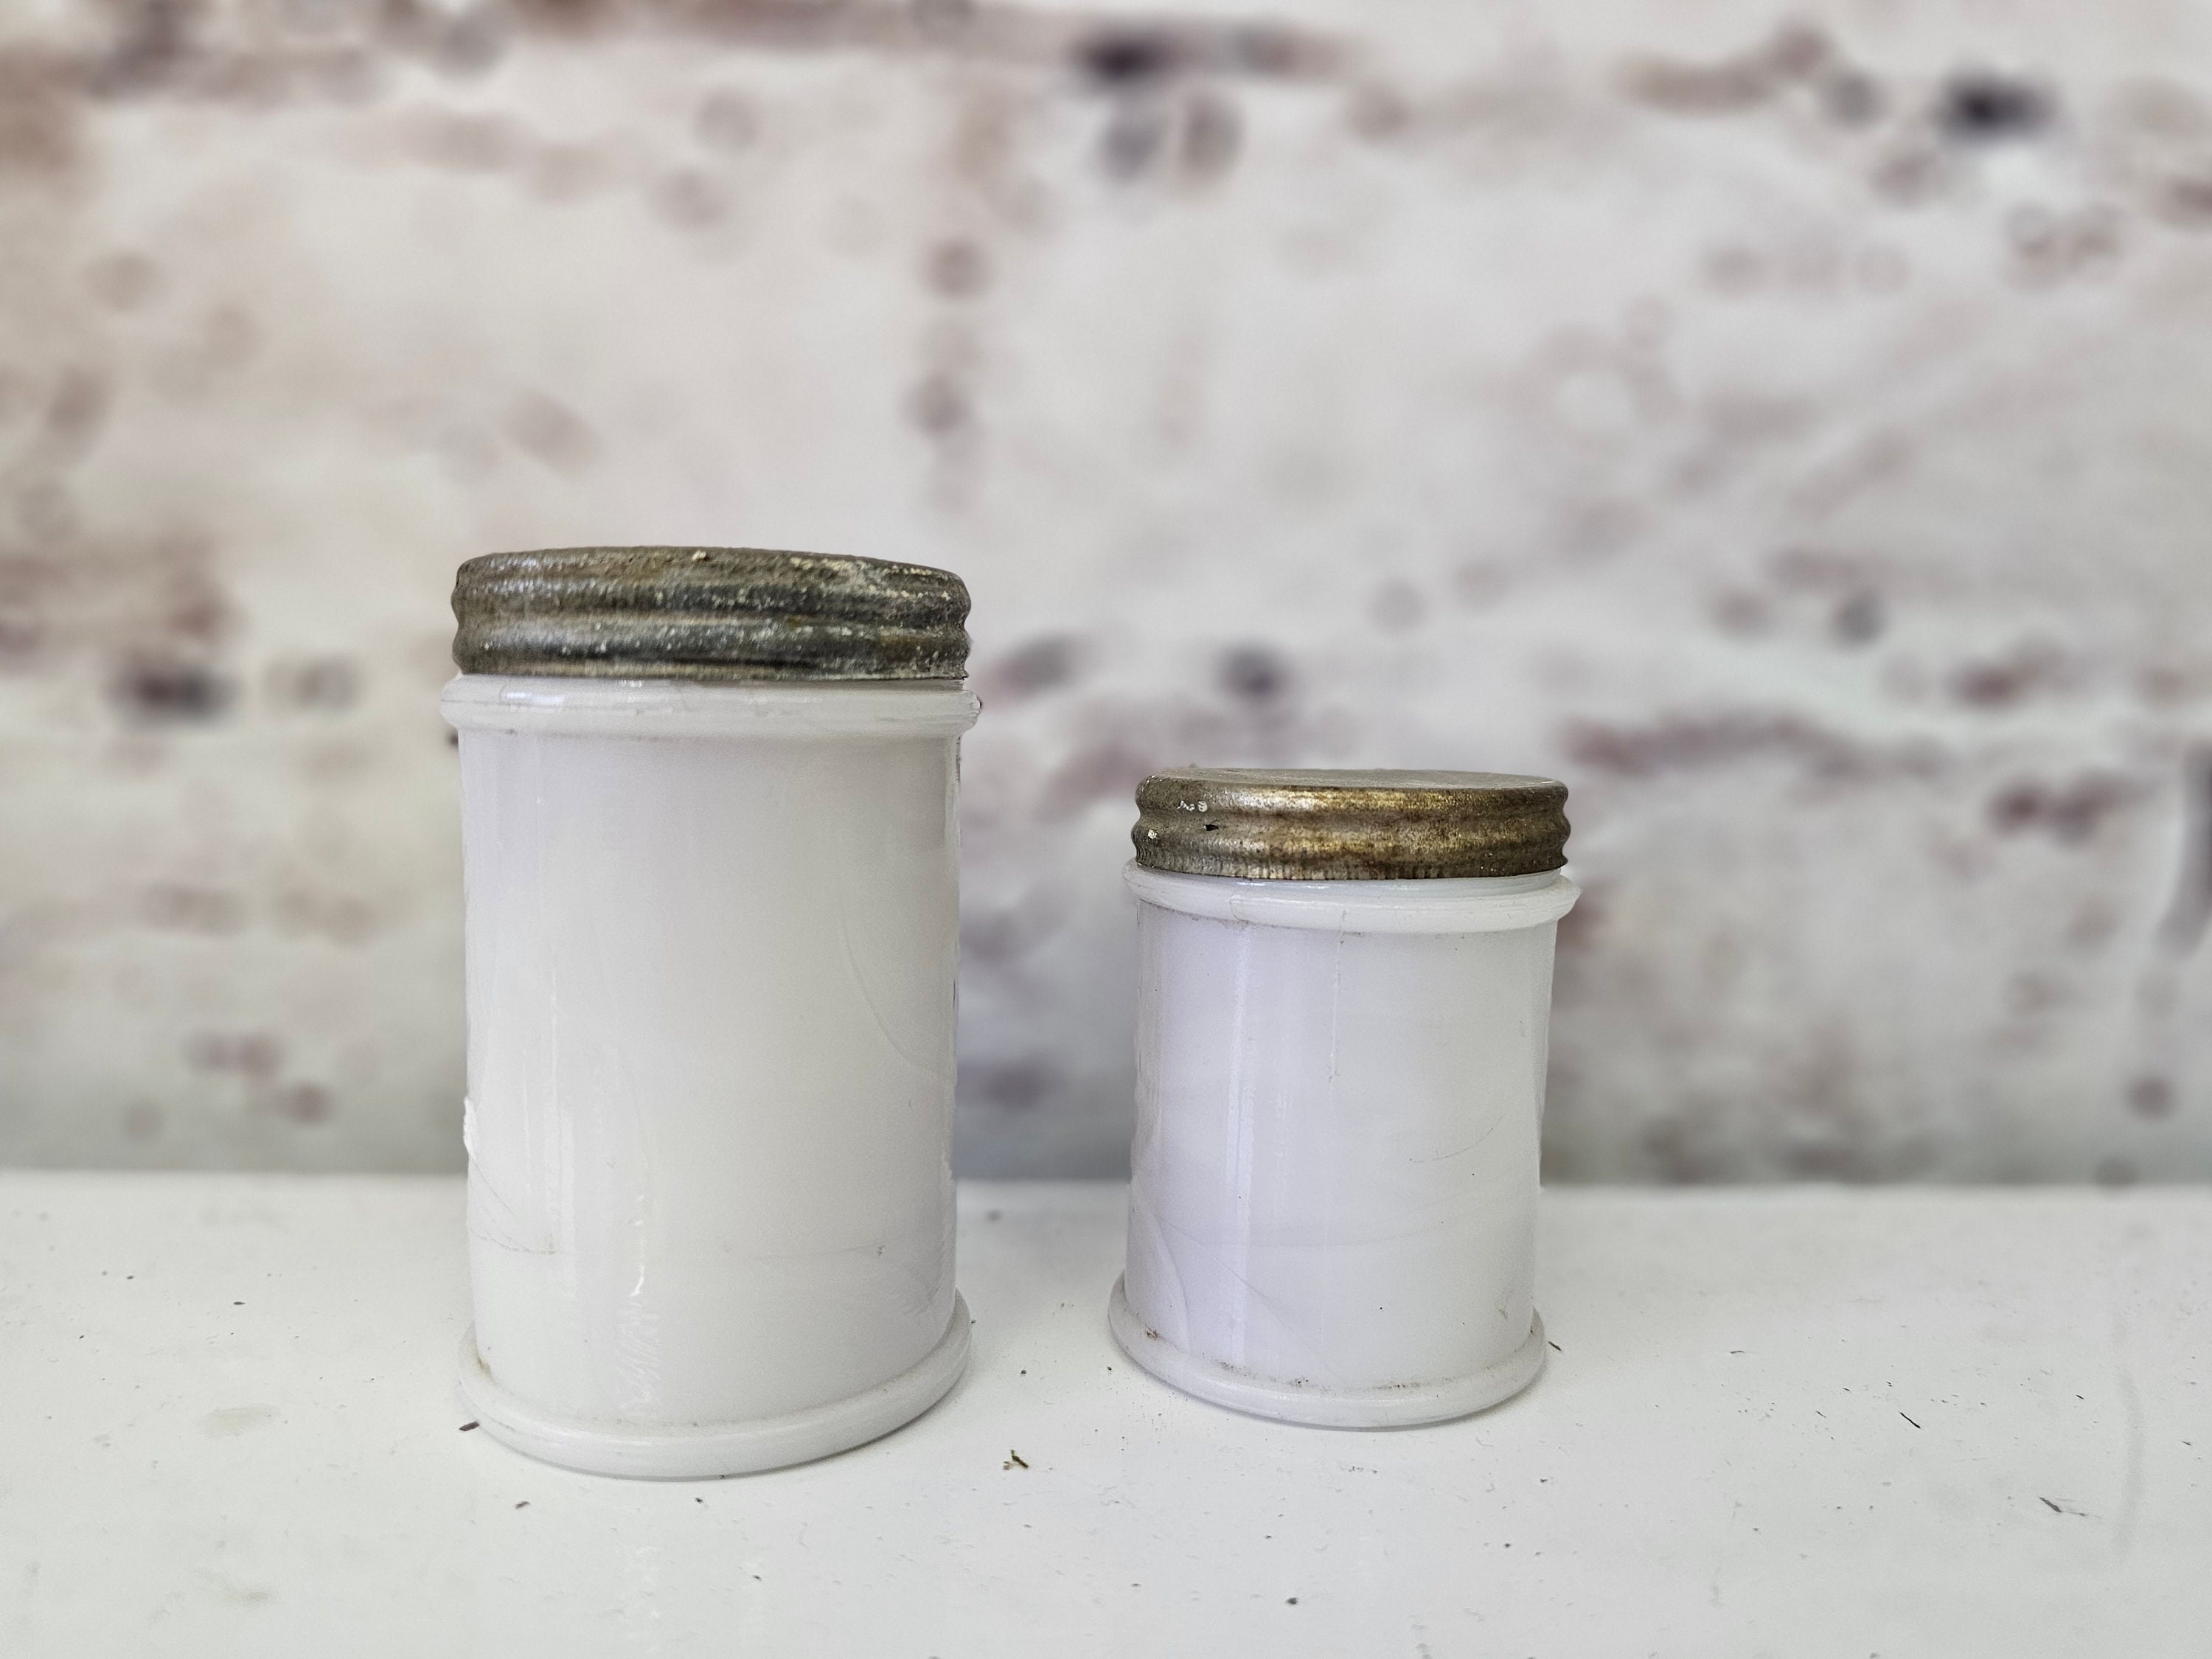 Resinol Medicated Ointment Jar, 3.3 oz Ingredients and Reviews